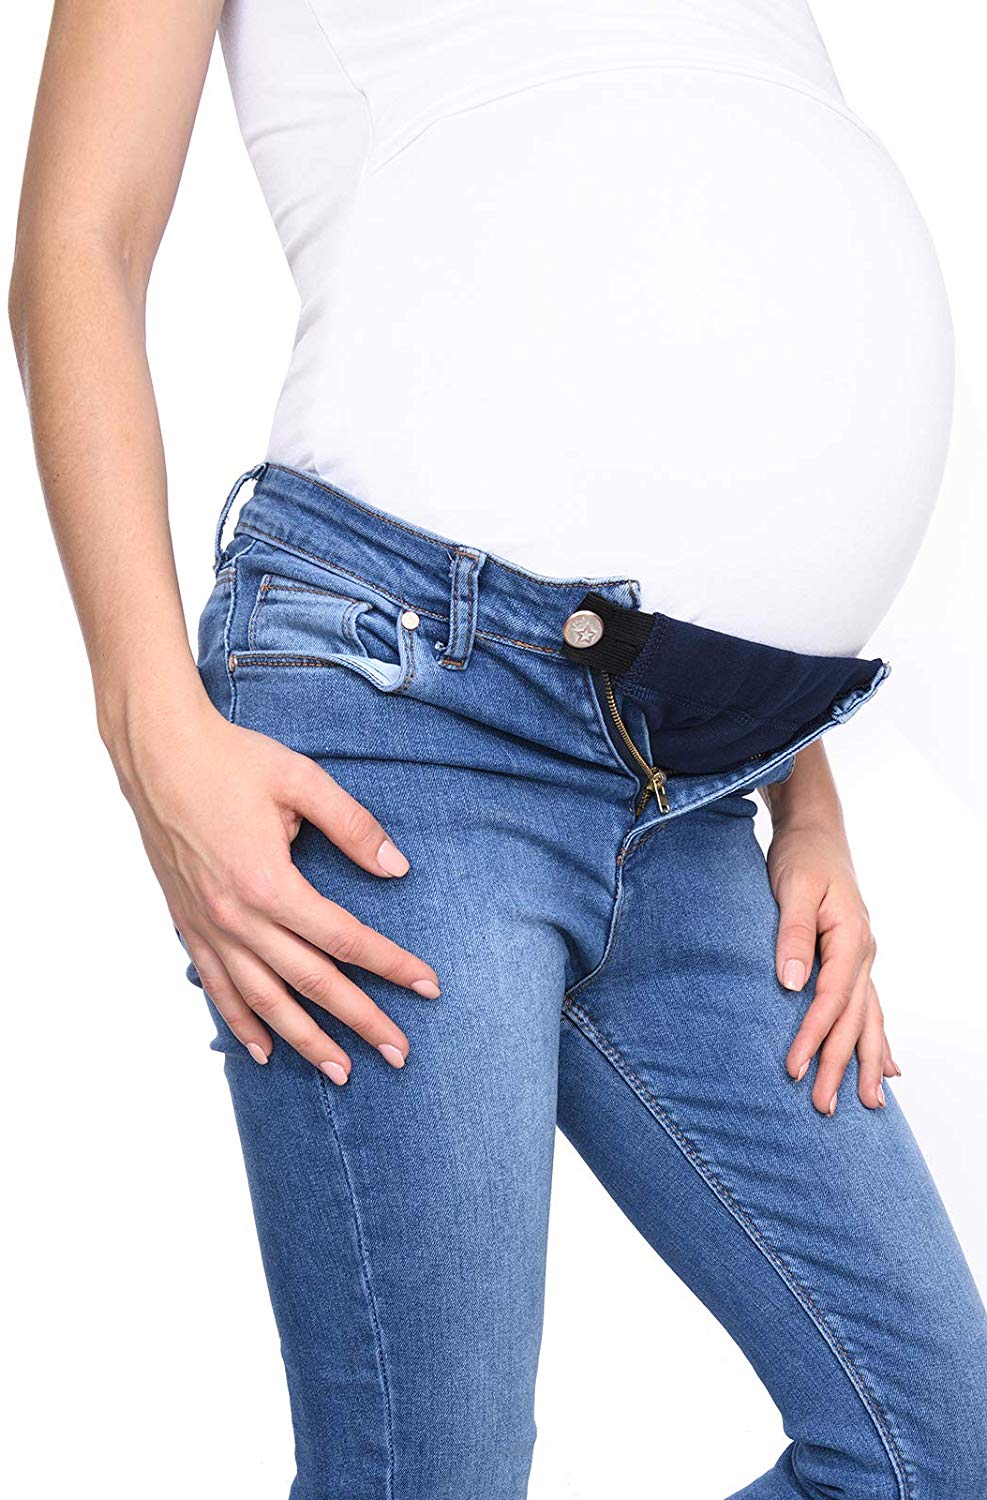 Comment bien choisir ses pantalons de grossesse ?